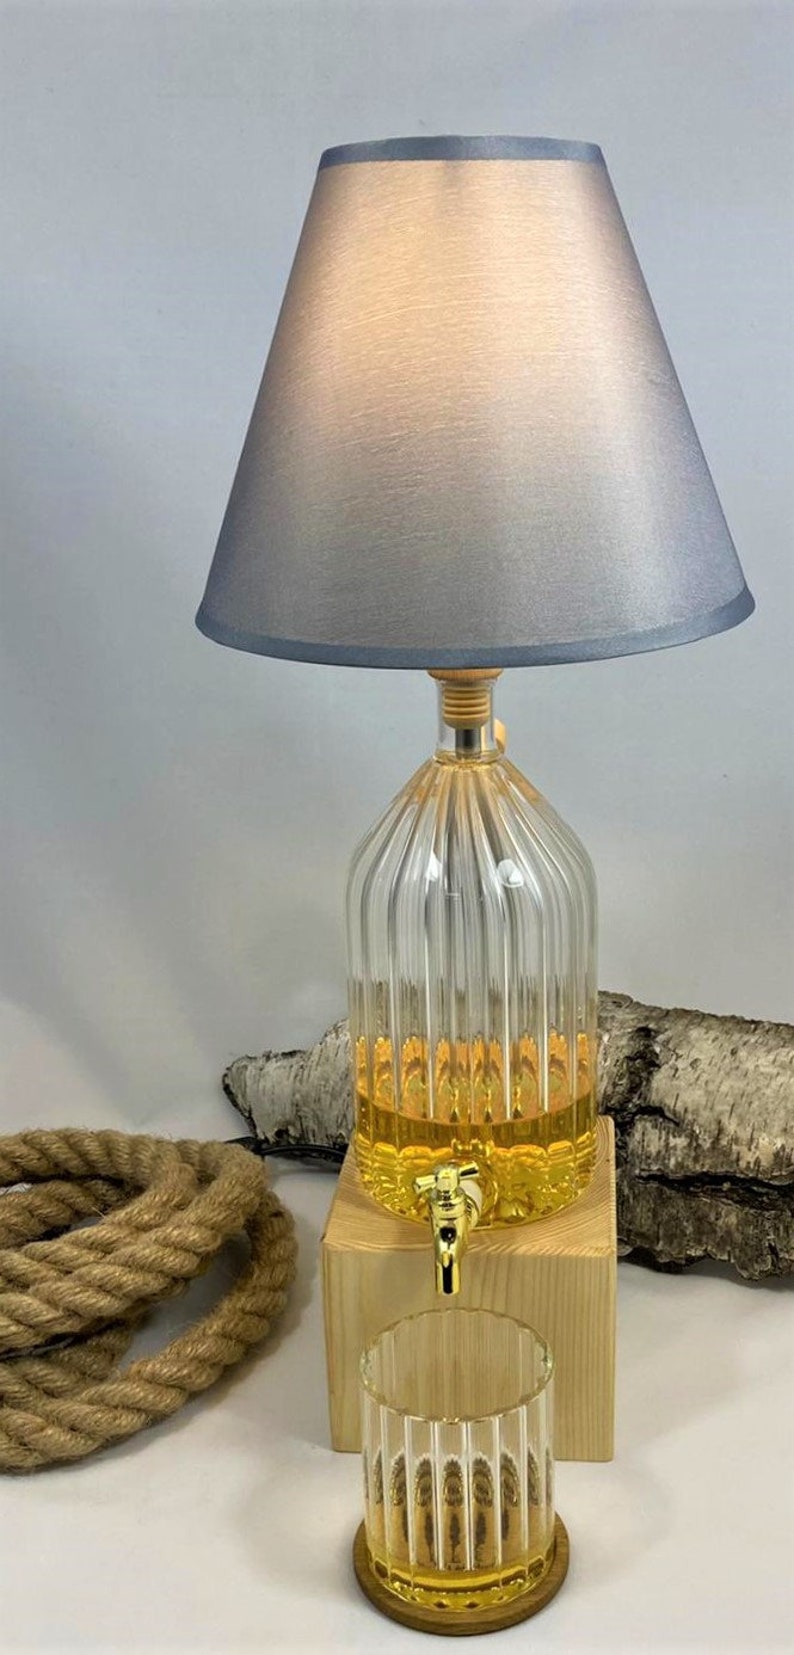 Gift for Men, Table Lamp, Decanter, Whiskey Dispenser, Christmas Gift for Boyfriend, Whiskey Lamp Drinking Glass image 3